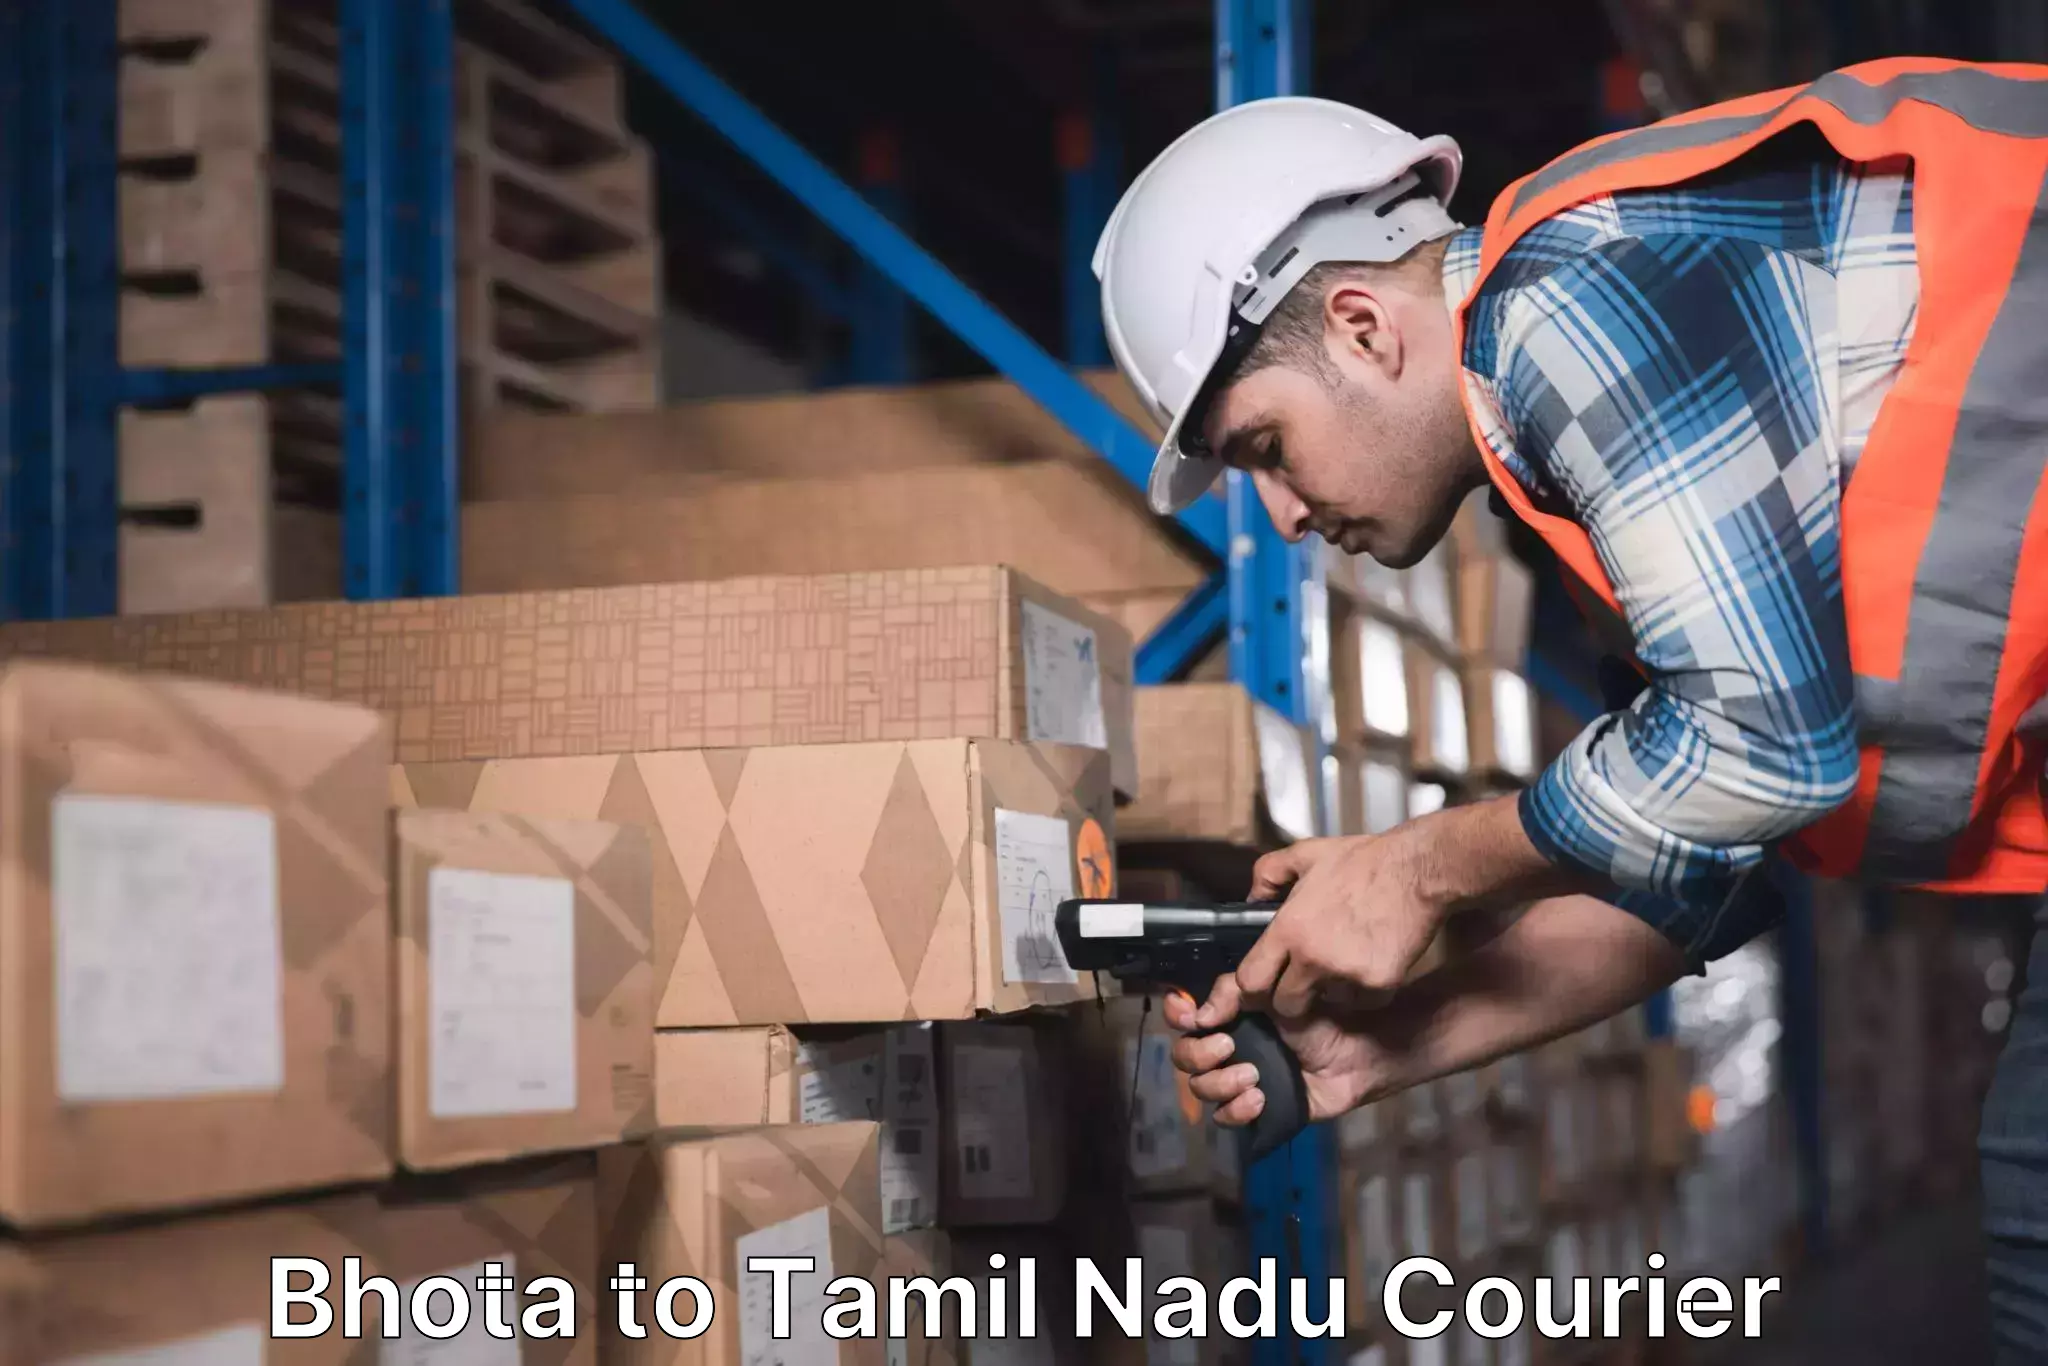 Professional courier handling Bhota to Thiruthuraipoondi